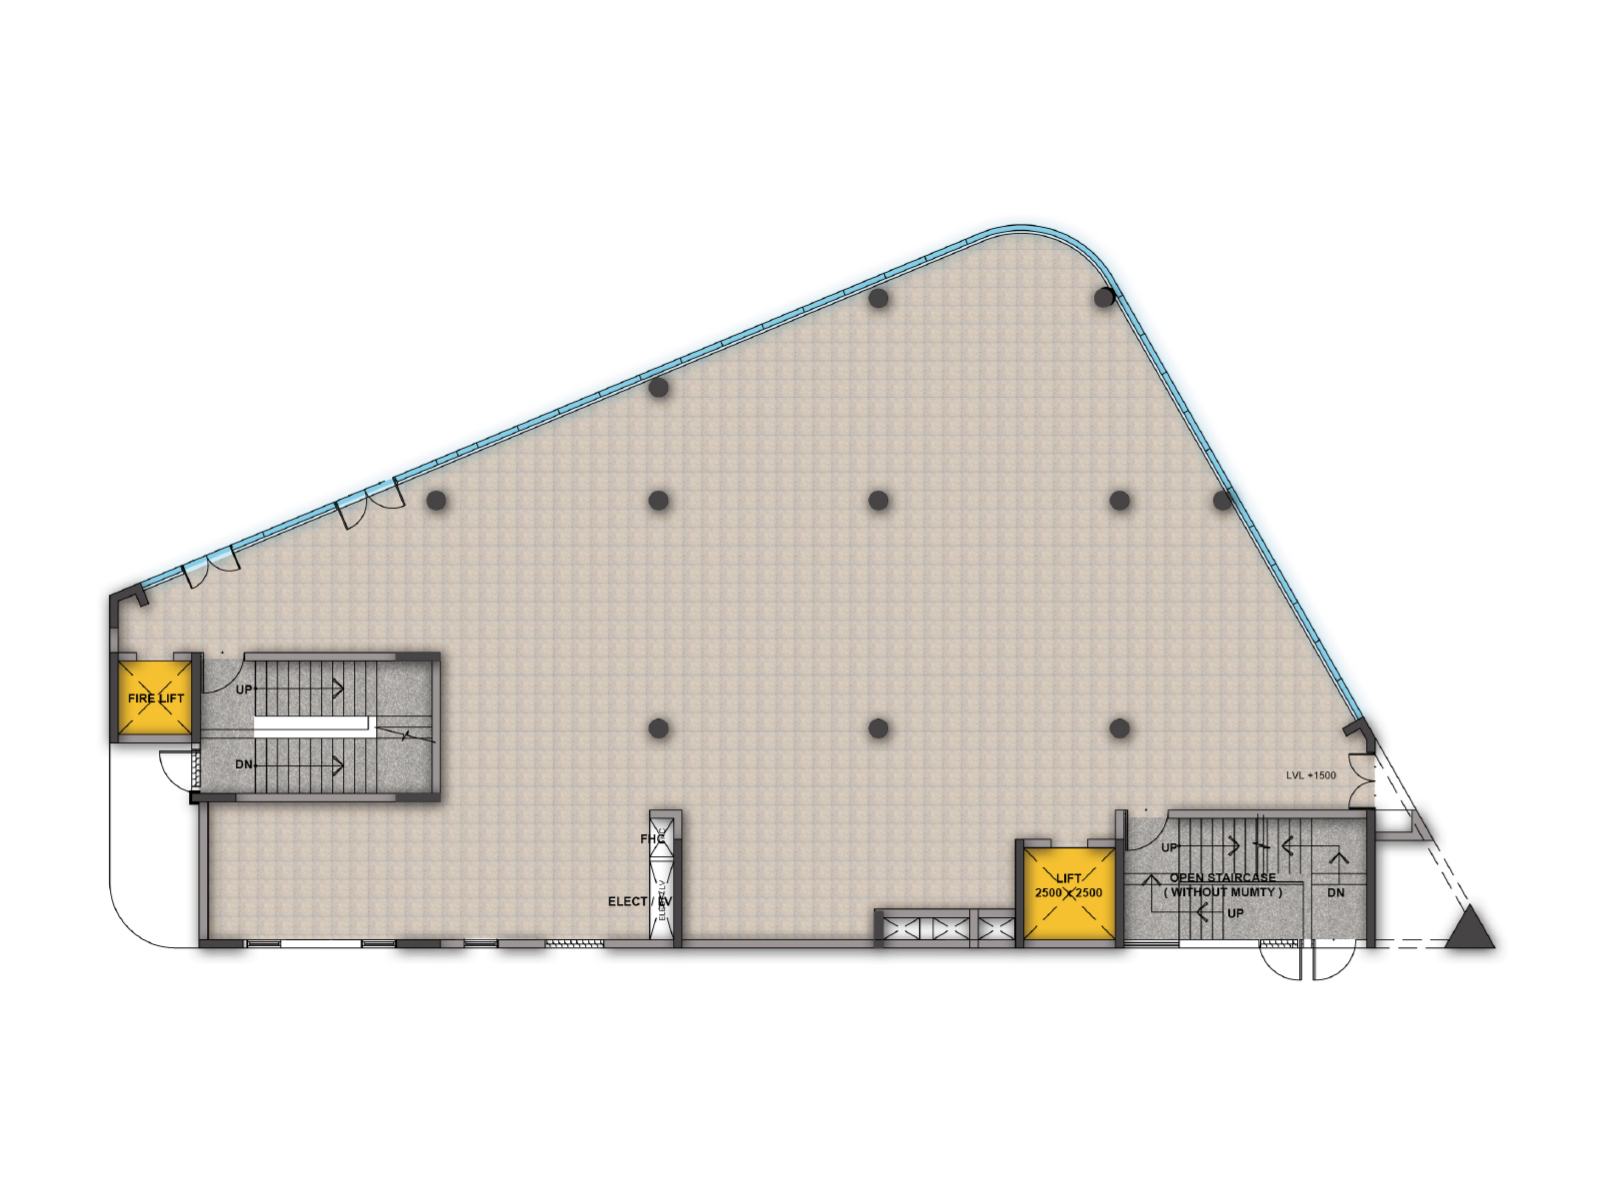 Trehan IRIS Broadway – Floor plan for block C, Lower Ground Floor